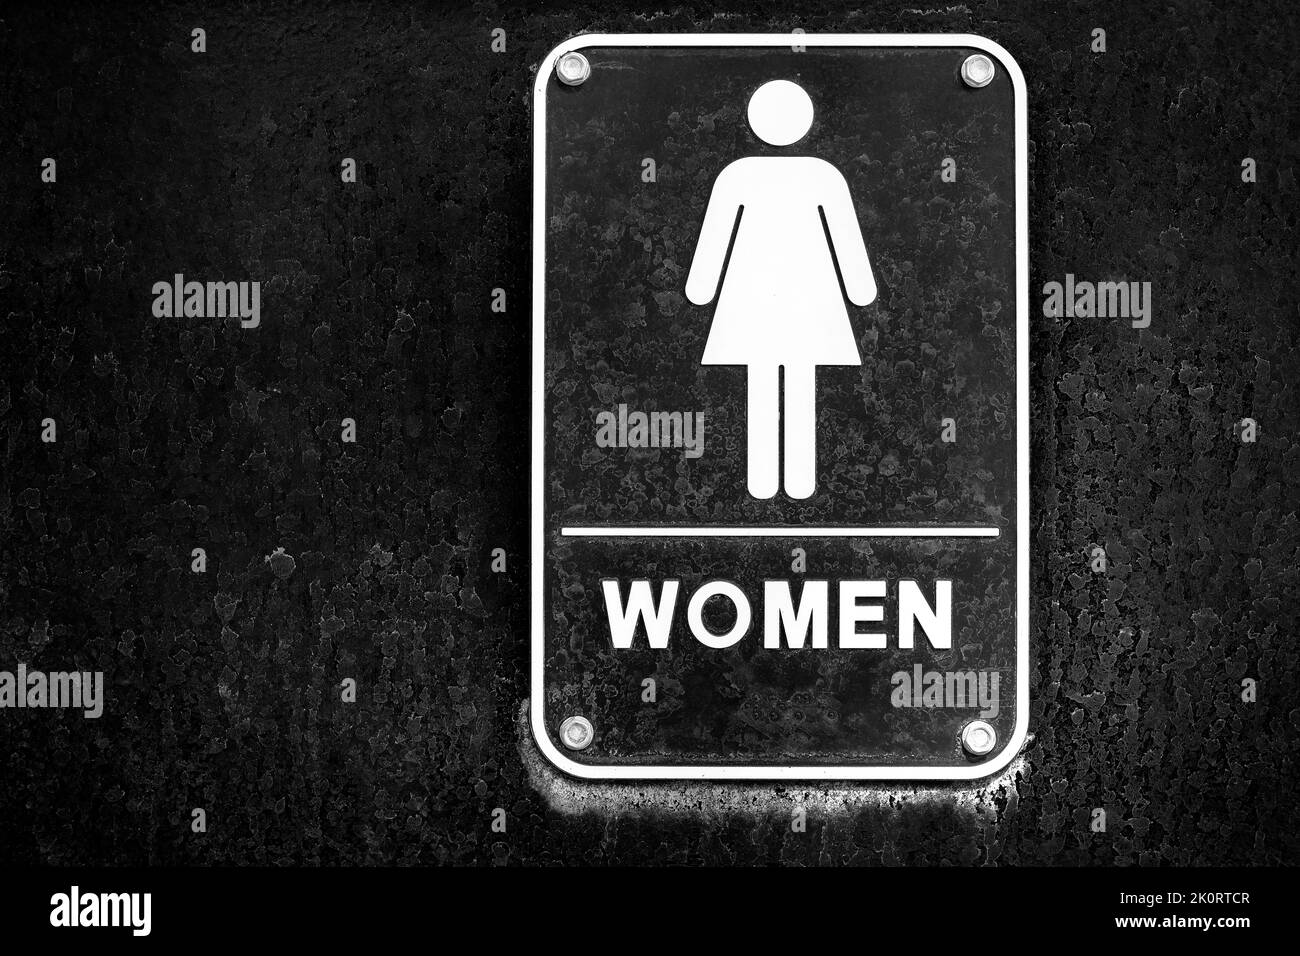 Affiche de toilettes pour femmes sur la porte noire avec des taches noires et blanches Banque D'Images